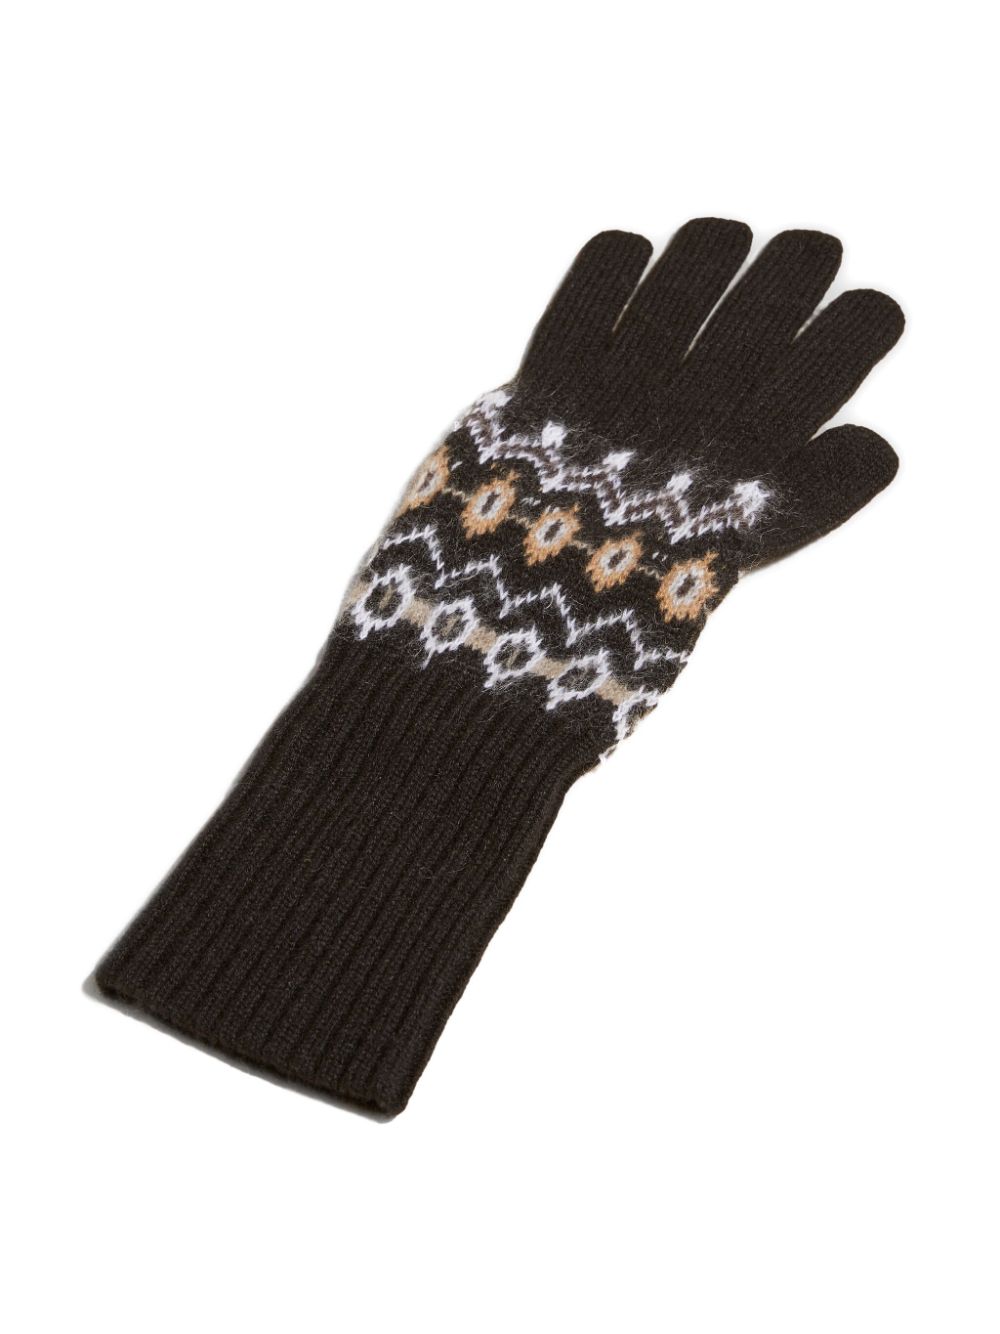 KHAITE The Vail kasjmier handschoenen - Zwart